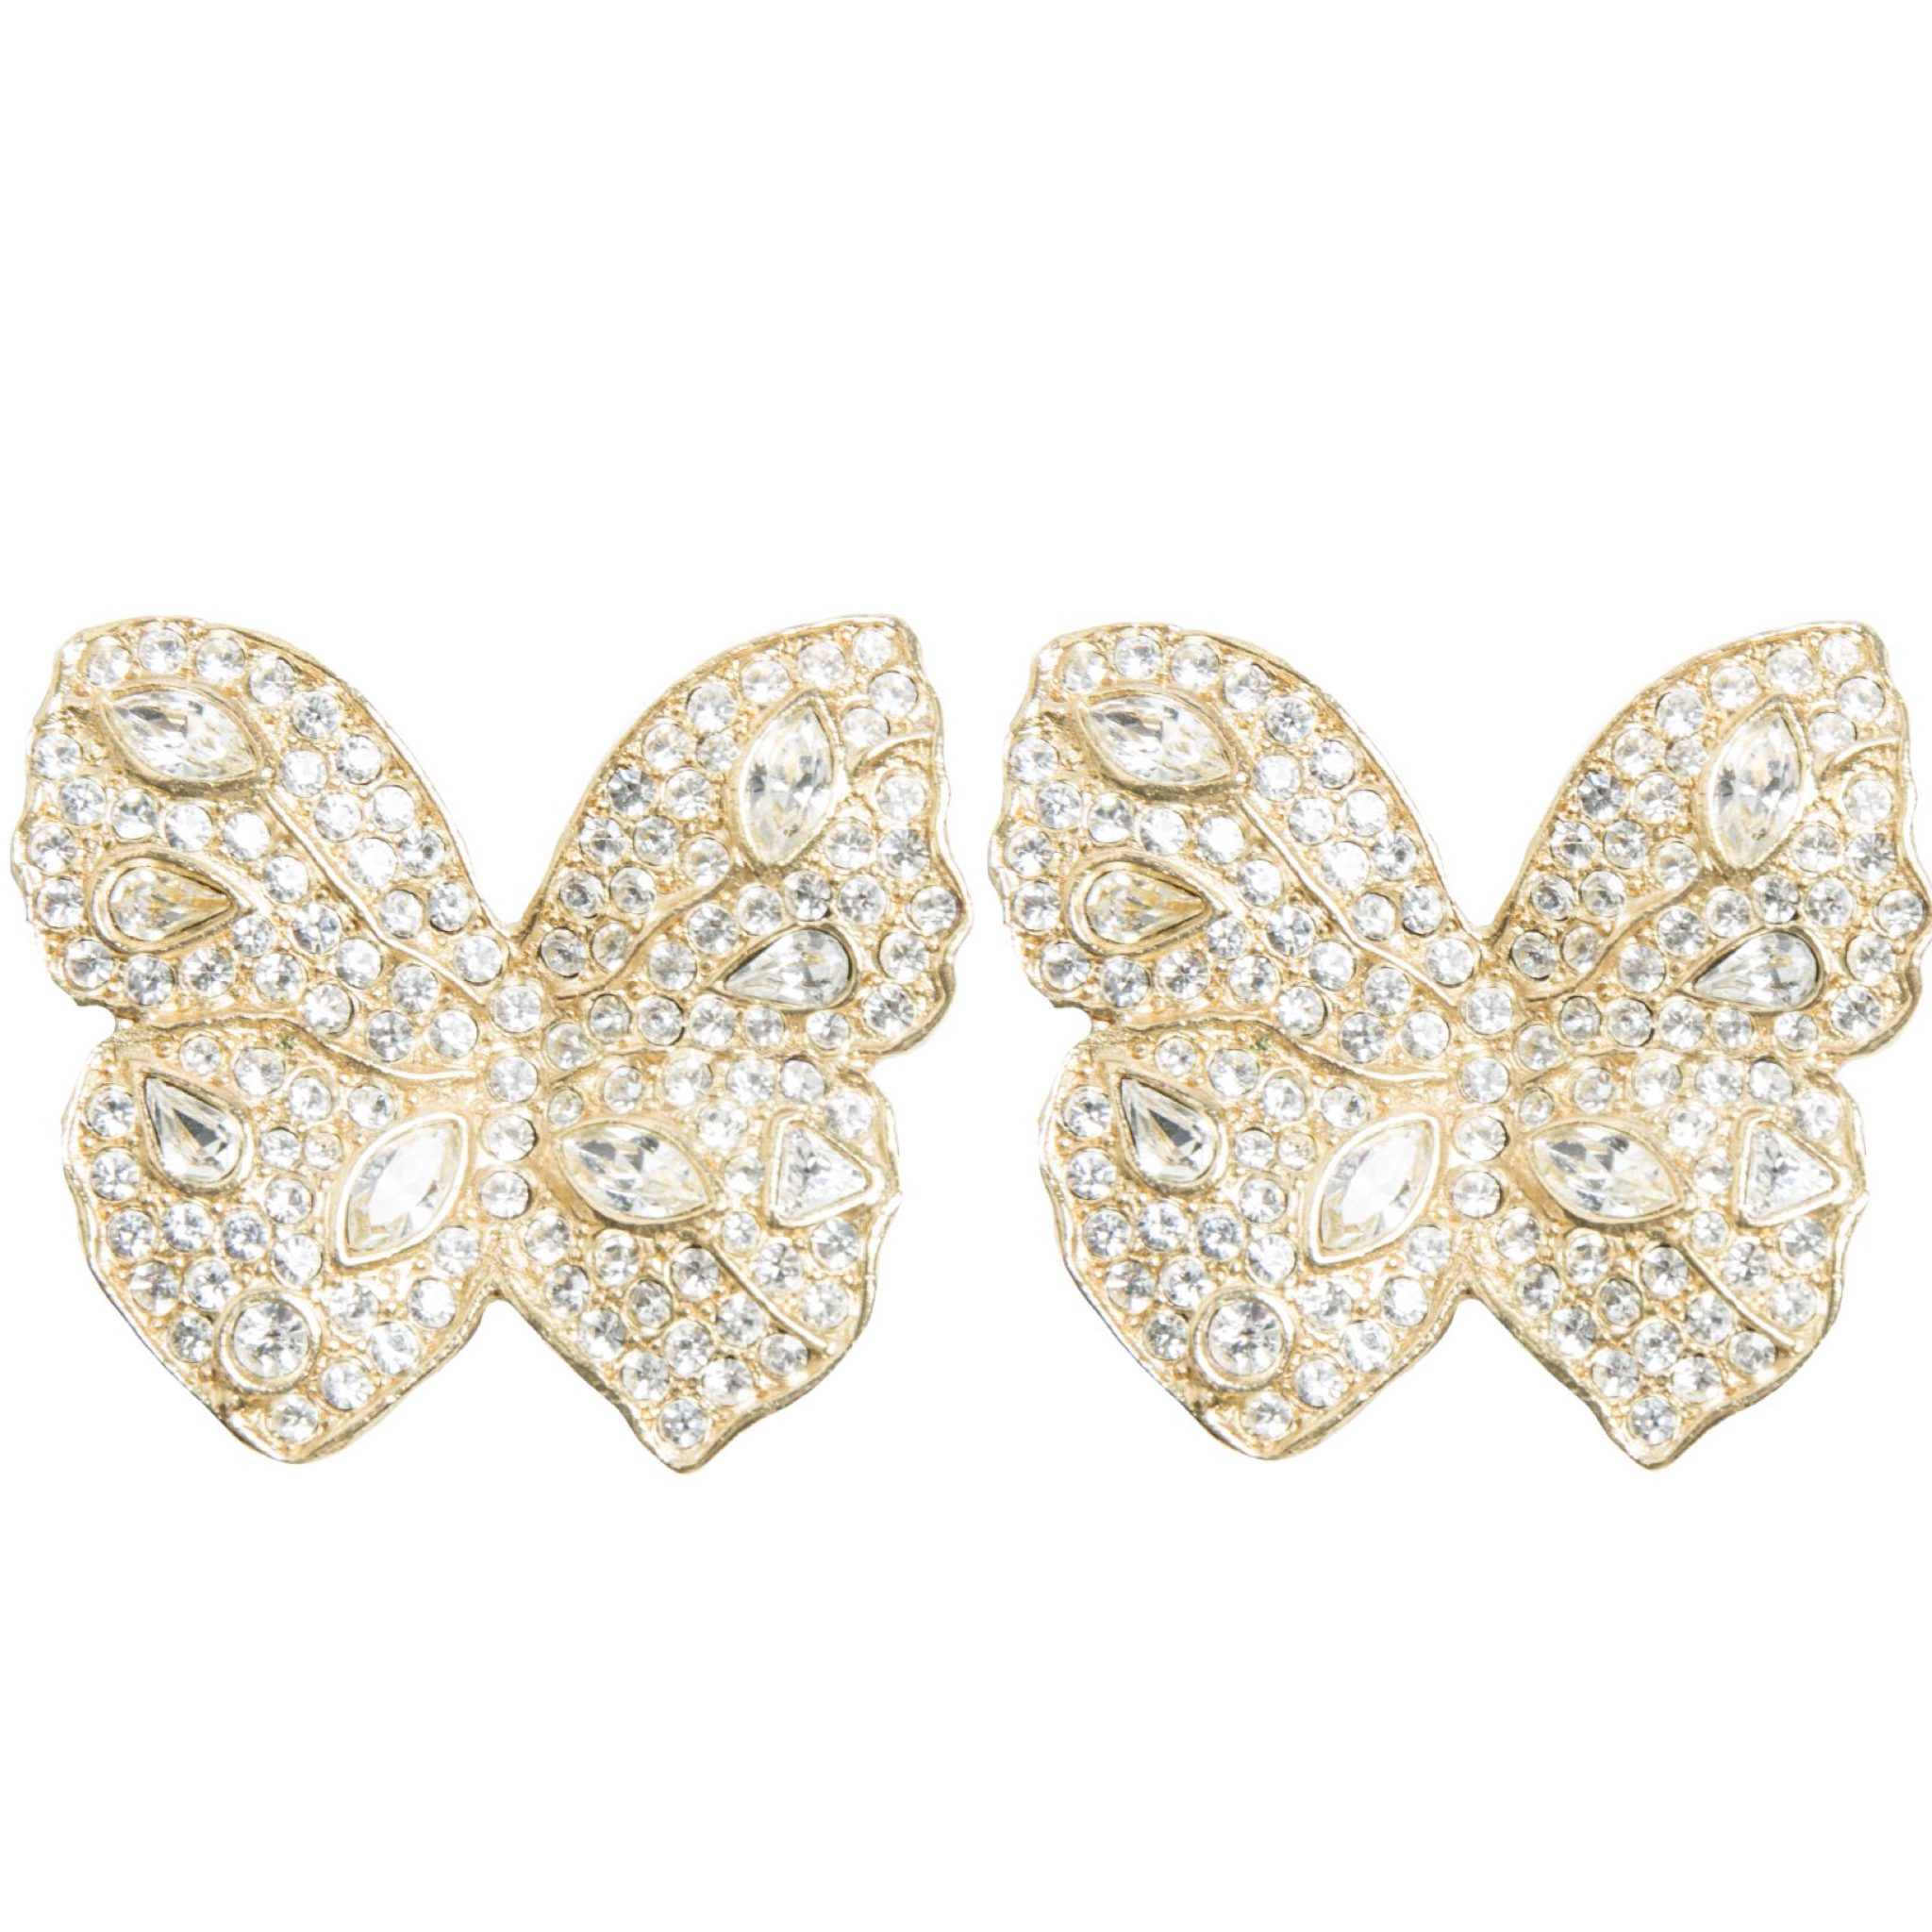 Vintage embellished butterfly earrings